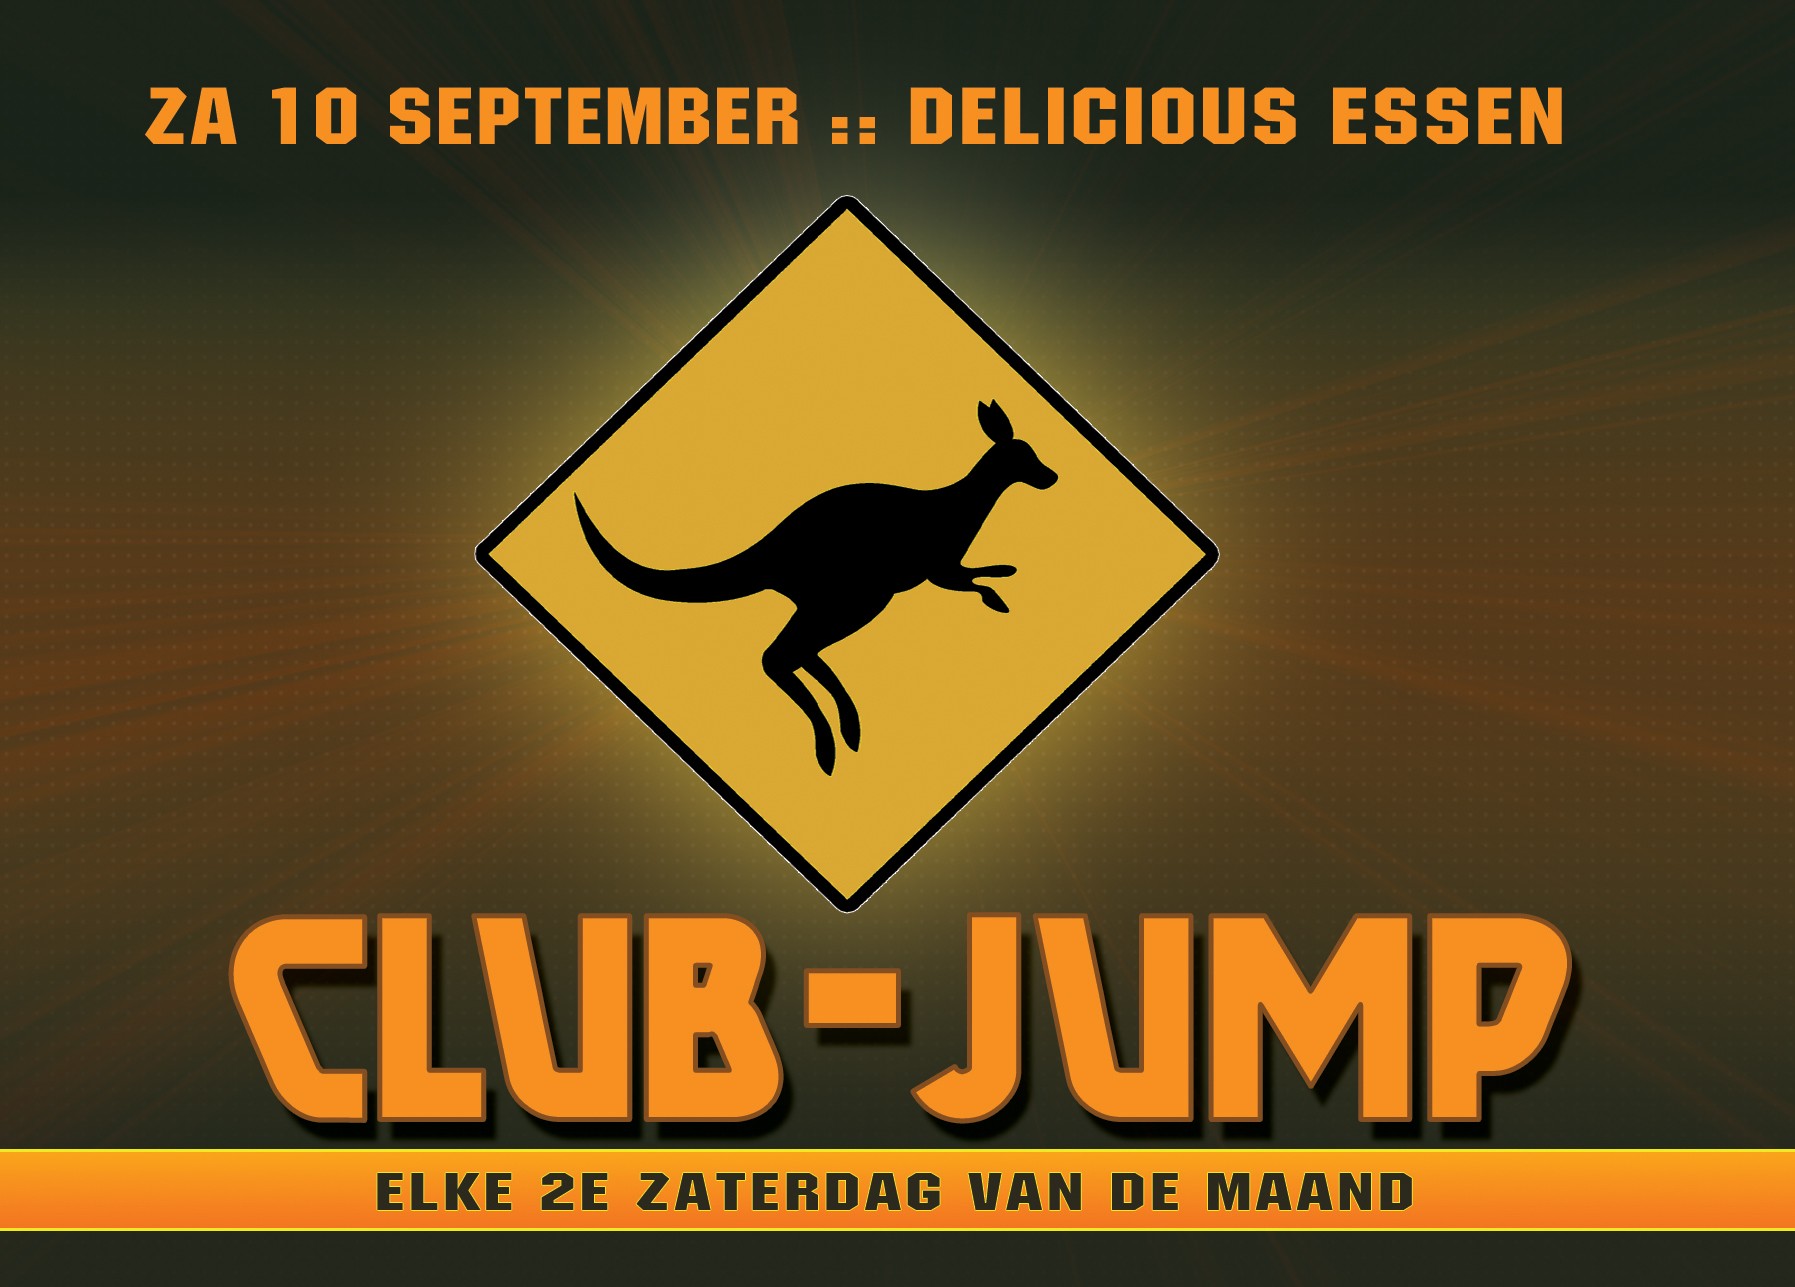 Club jump